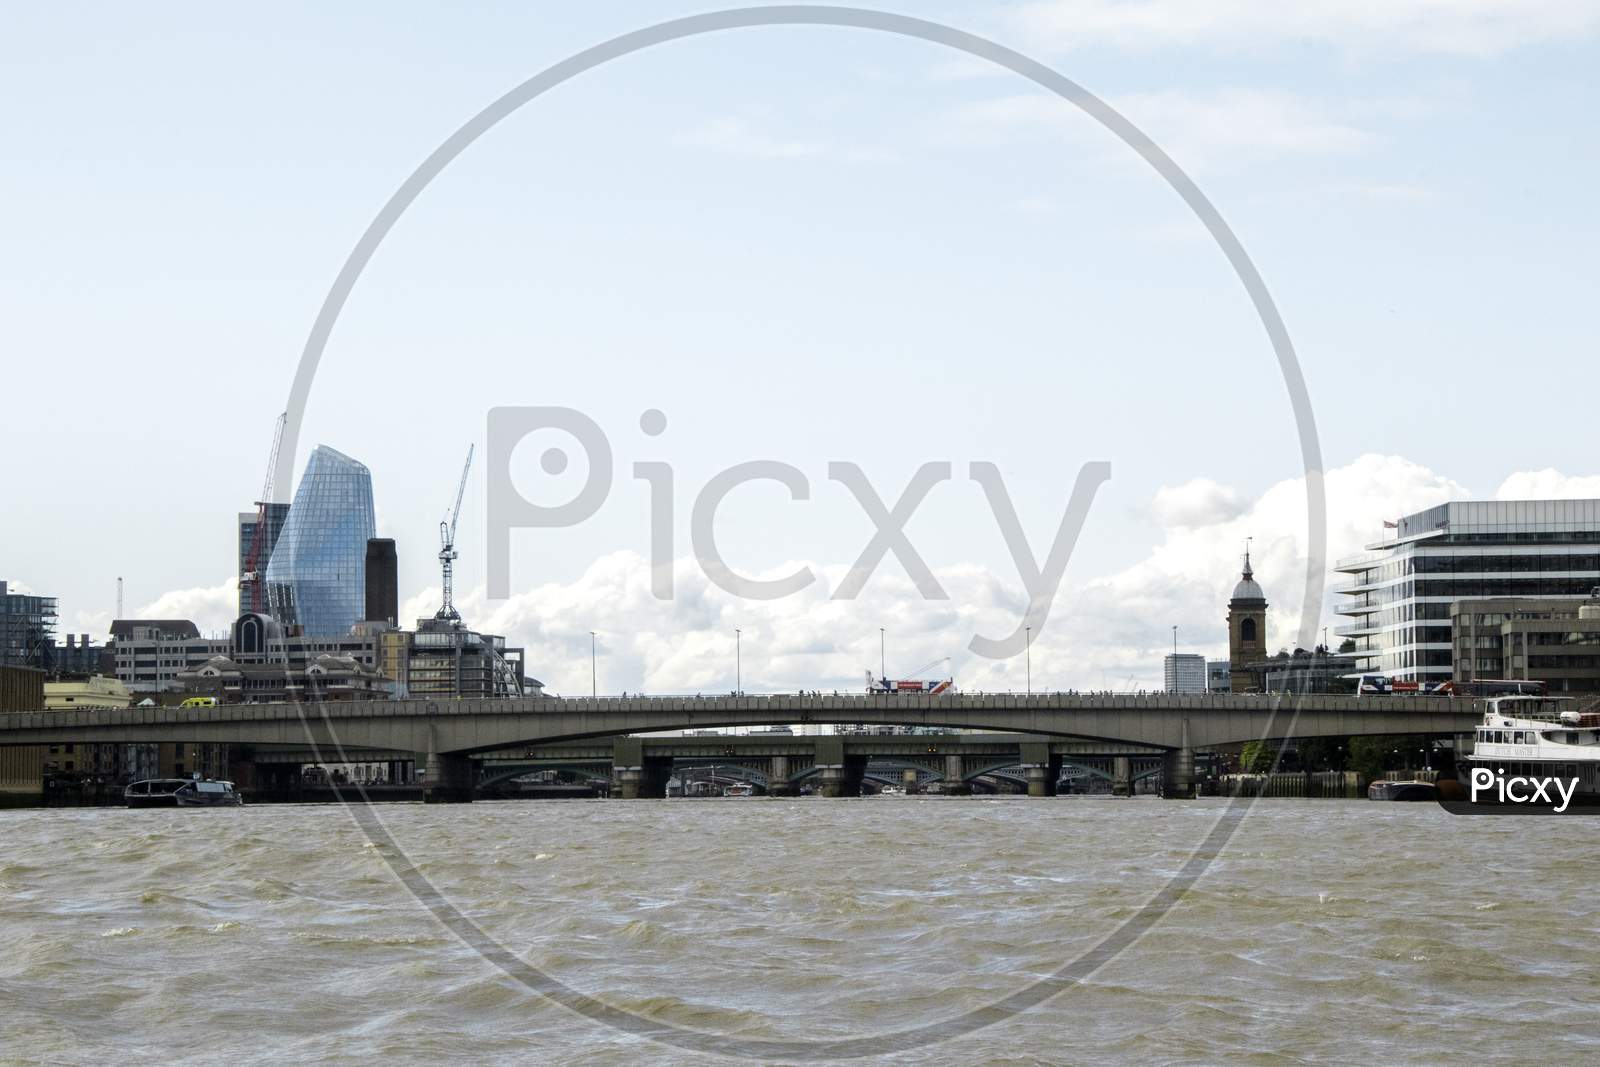 London Bridge View